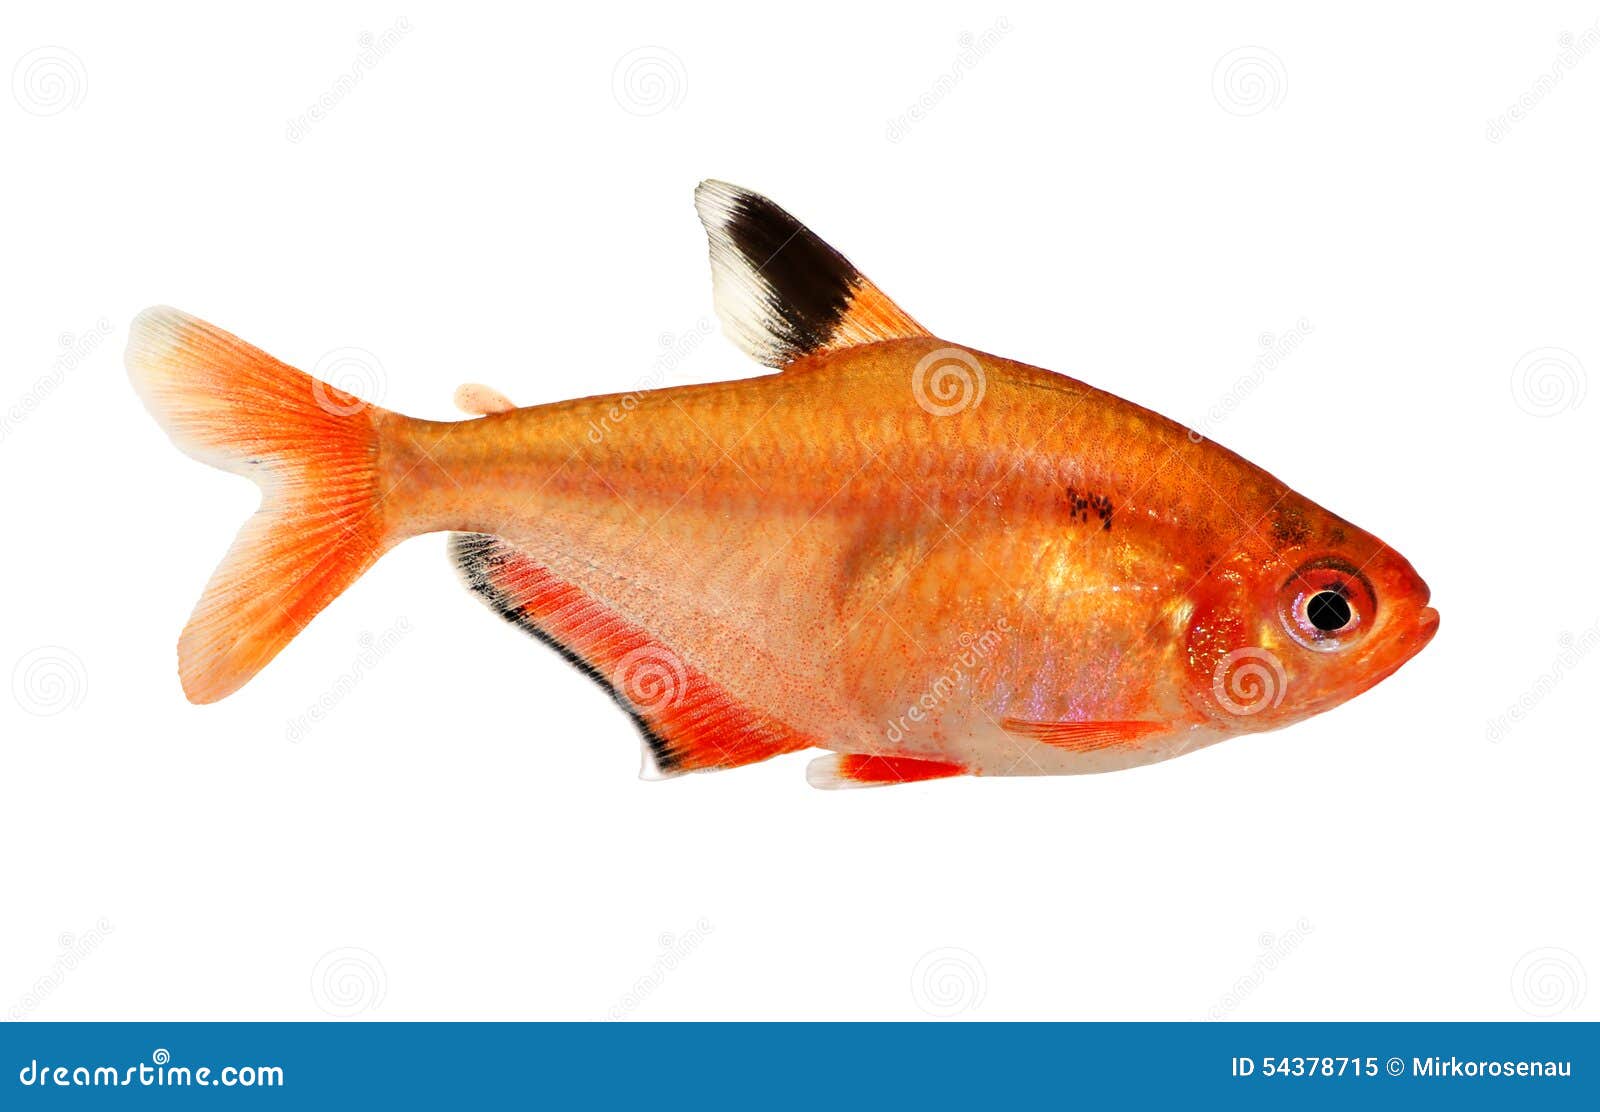 aquarium fish serpae tetra barb hyphessobrycon serape eques freshwater  on white